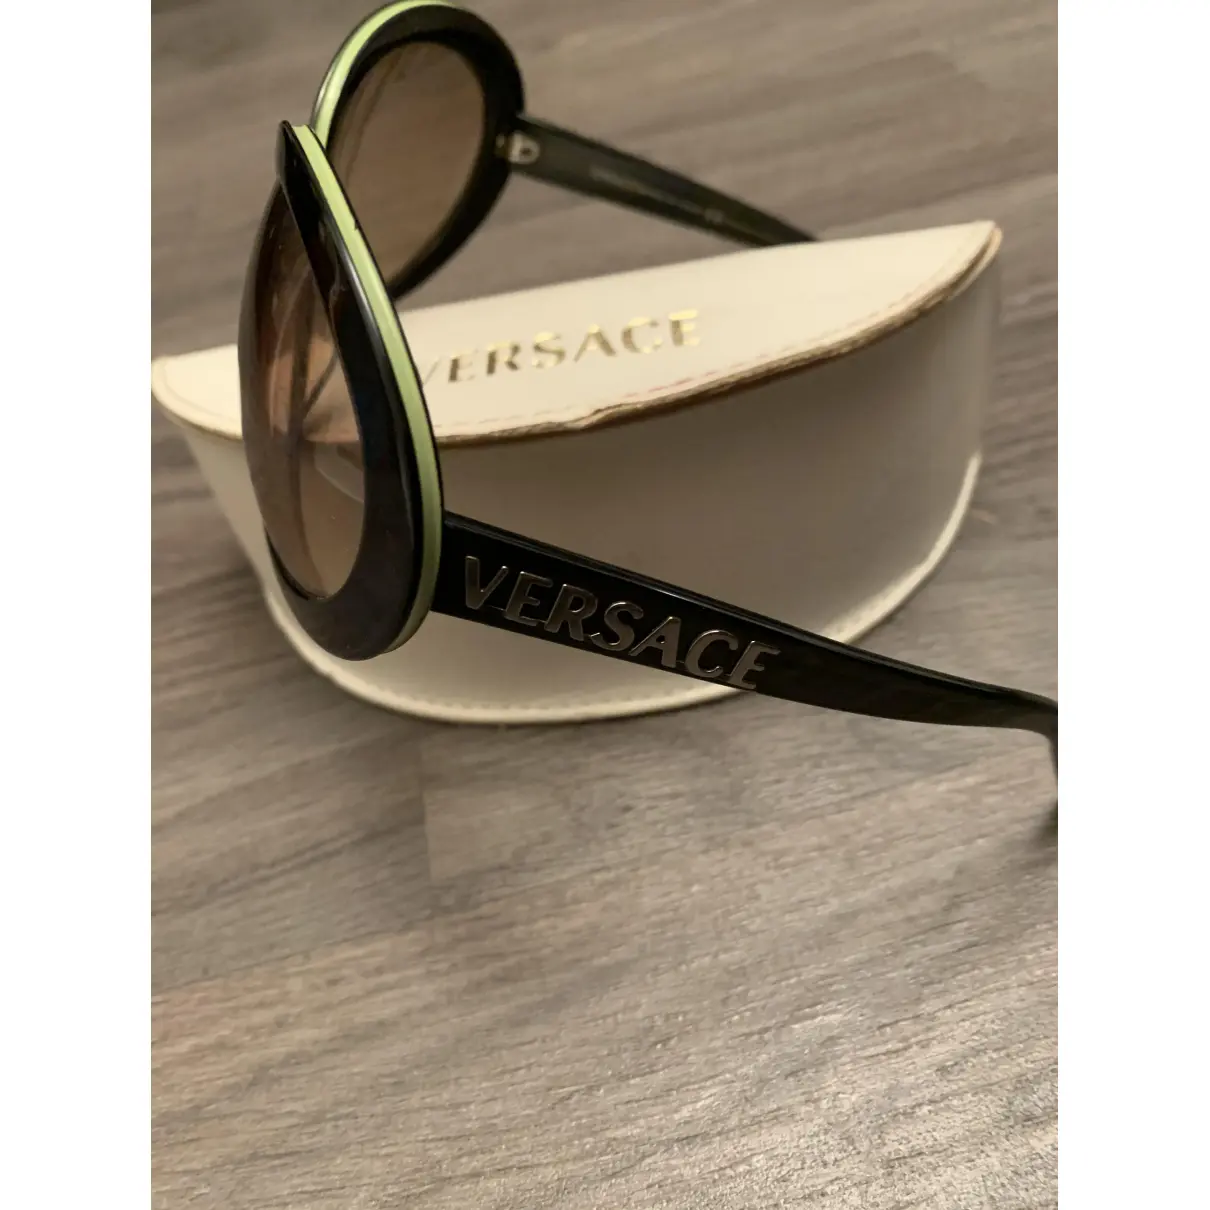 Buy Versace Oversized sunglasses online